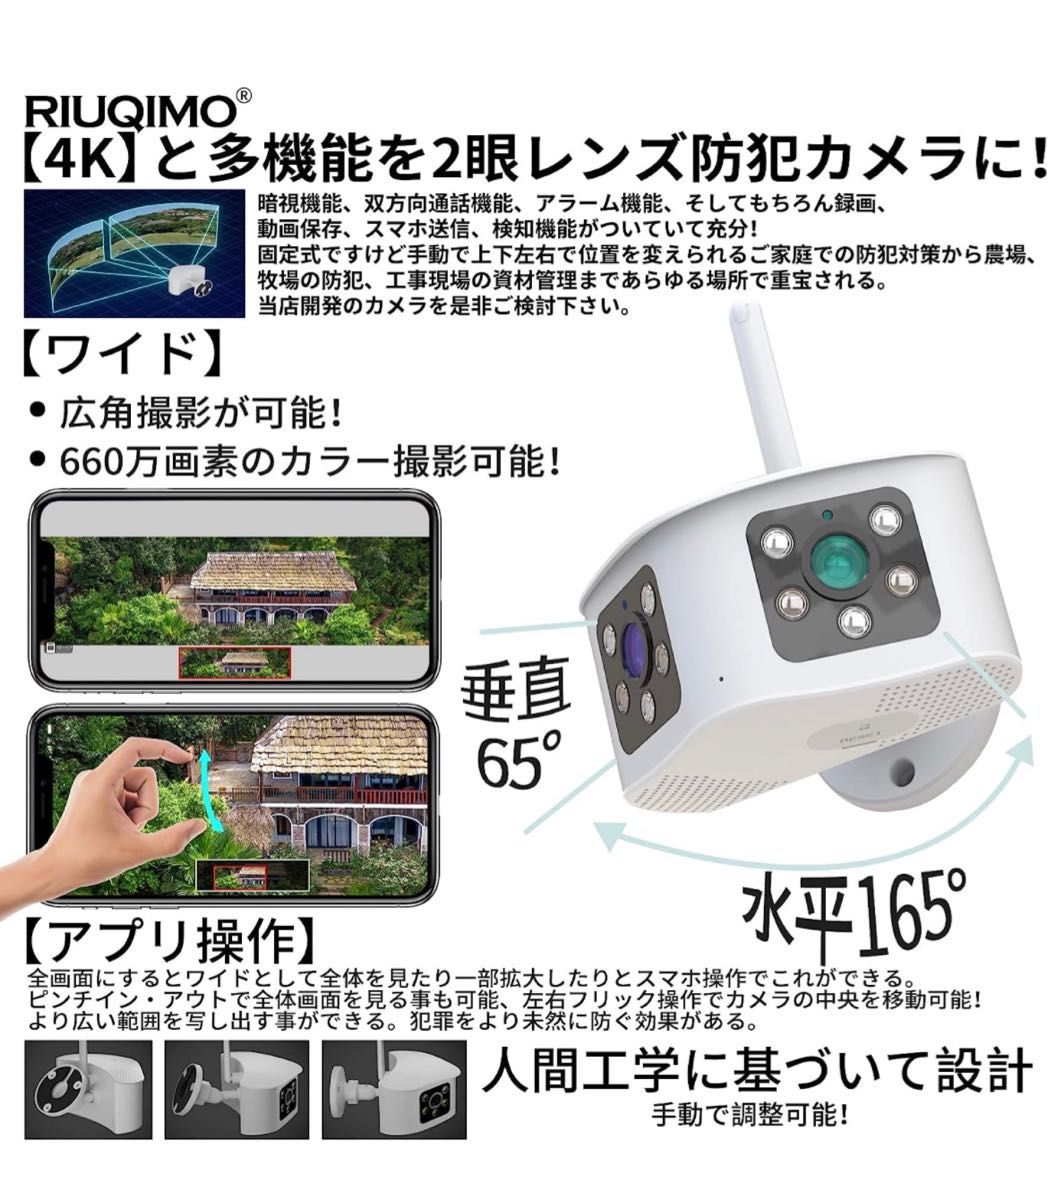 【特別価格】RIUQIMO 防犯カメラ 屋外 ワイヤレス 4K/660万 wifiカメラ 2眼レンズ 165度超広角 ピクチャ 